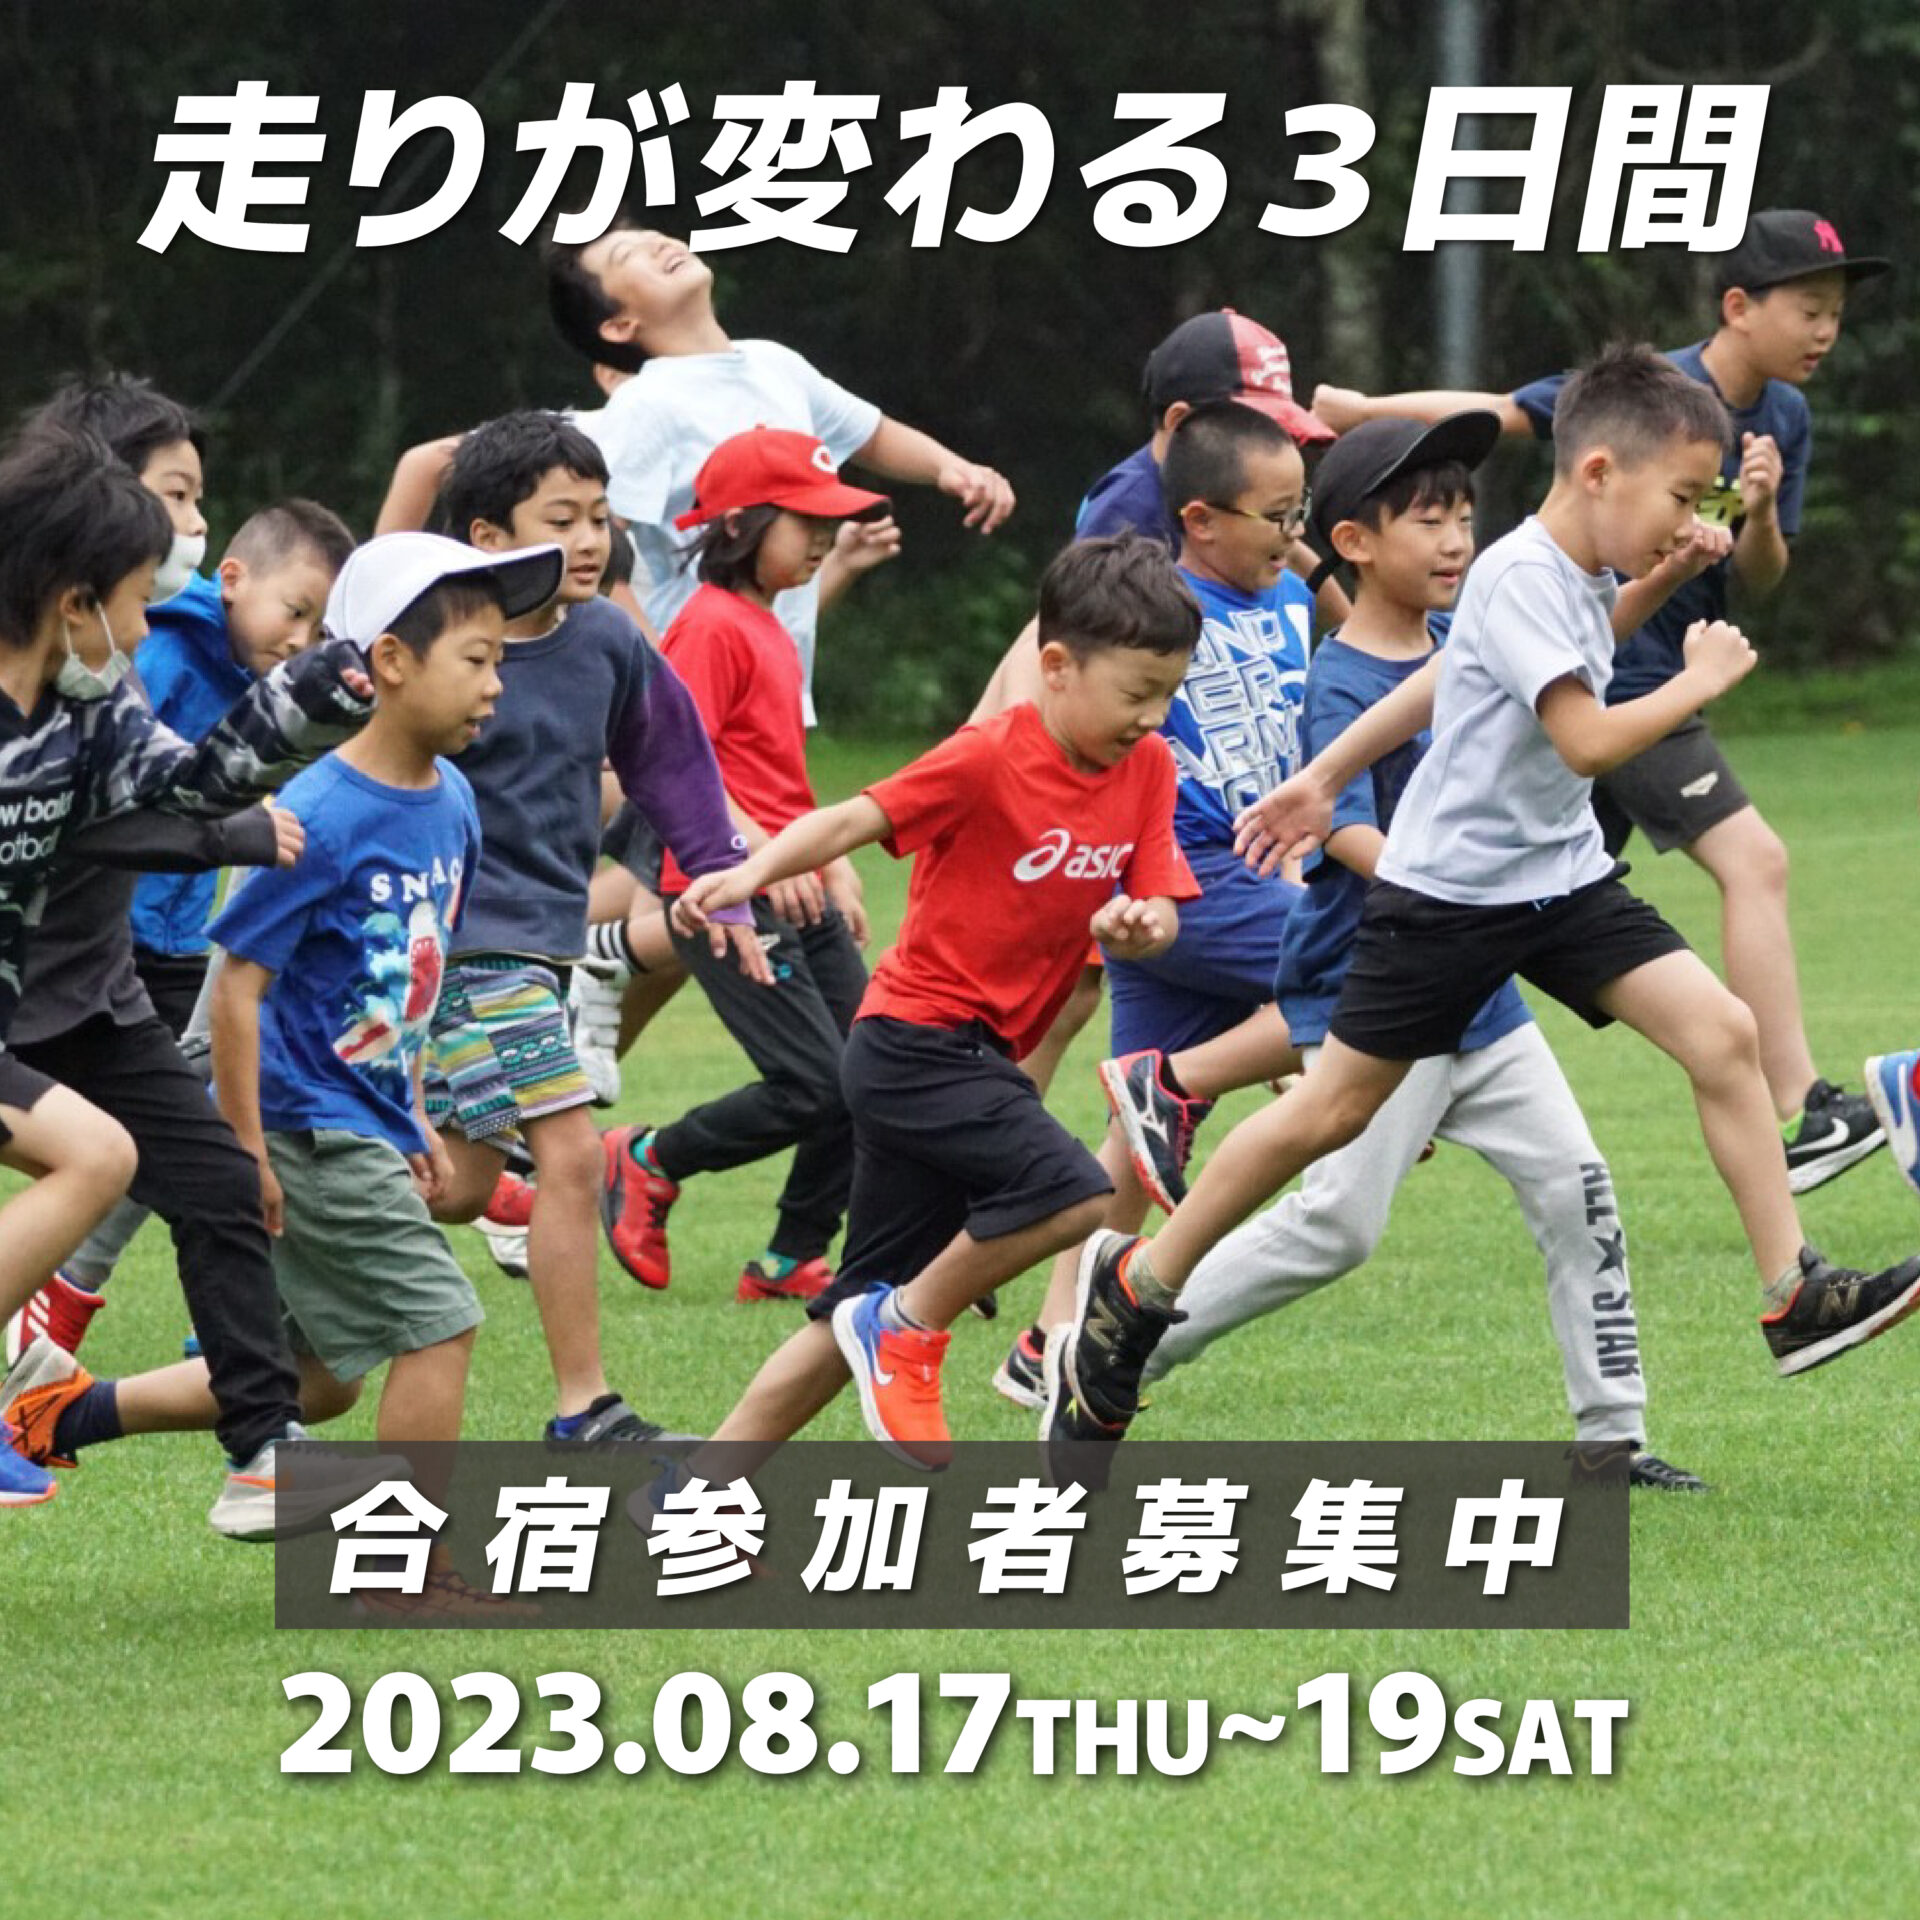 走りが変わる3日間。合宿参加者募集中。開催は2022年8月17日〜19日。